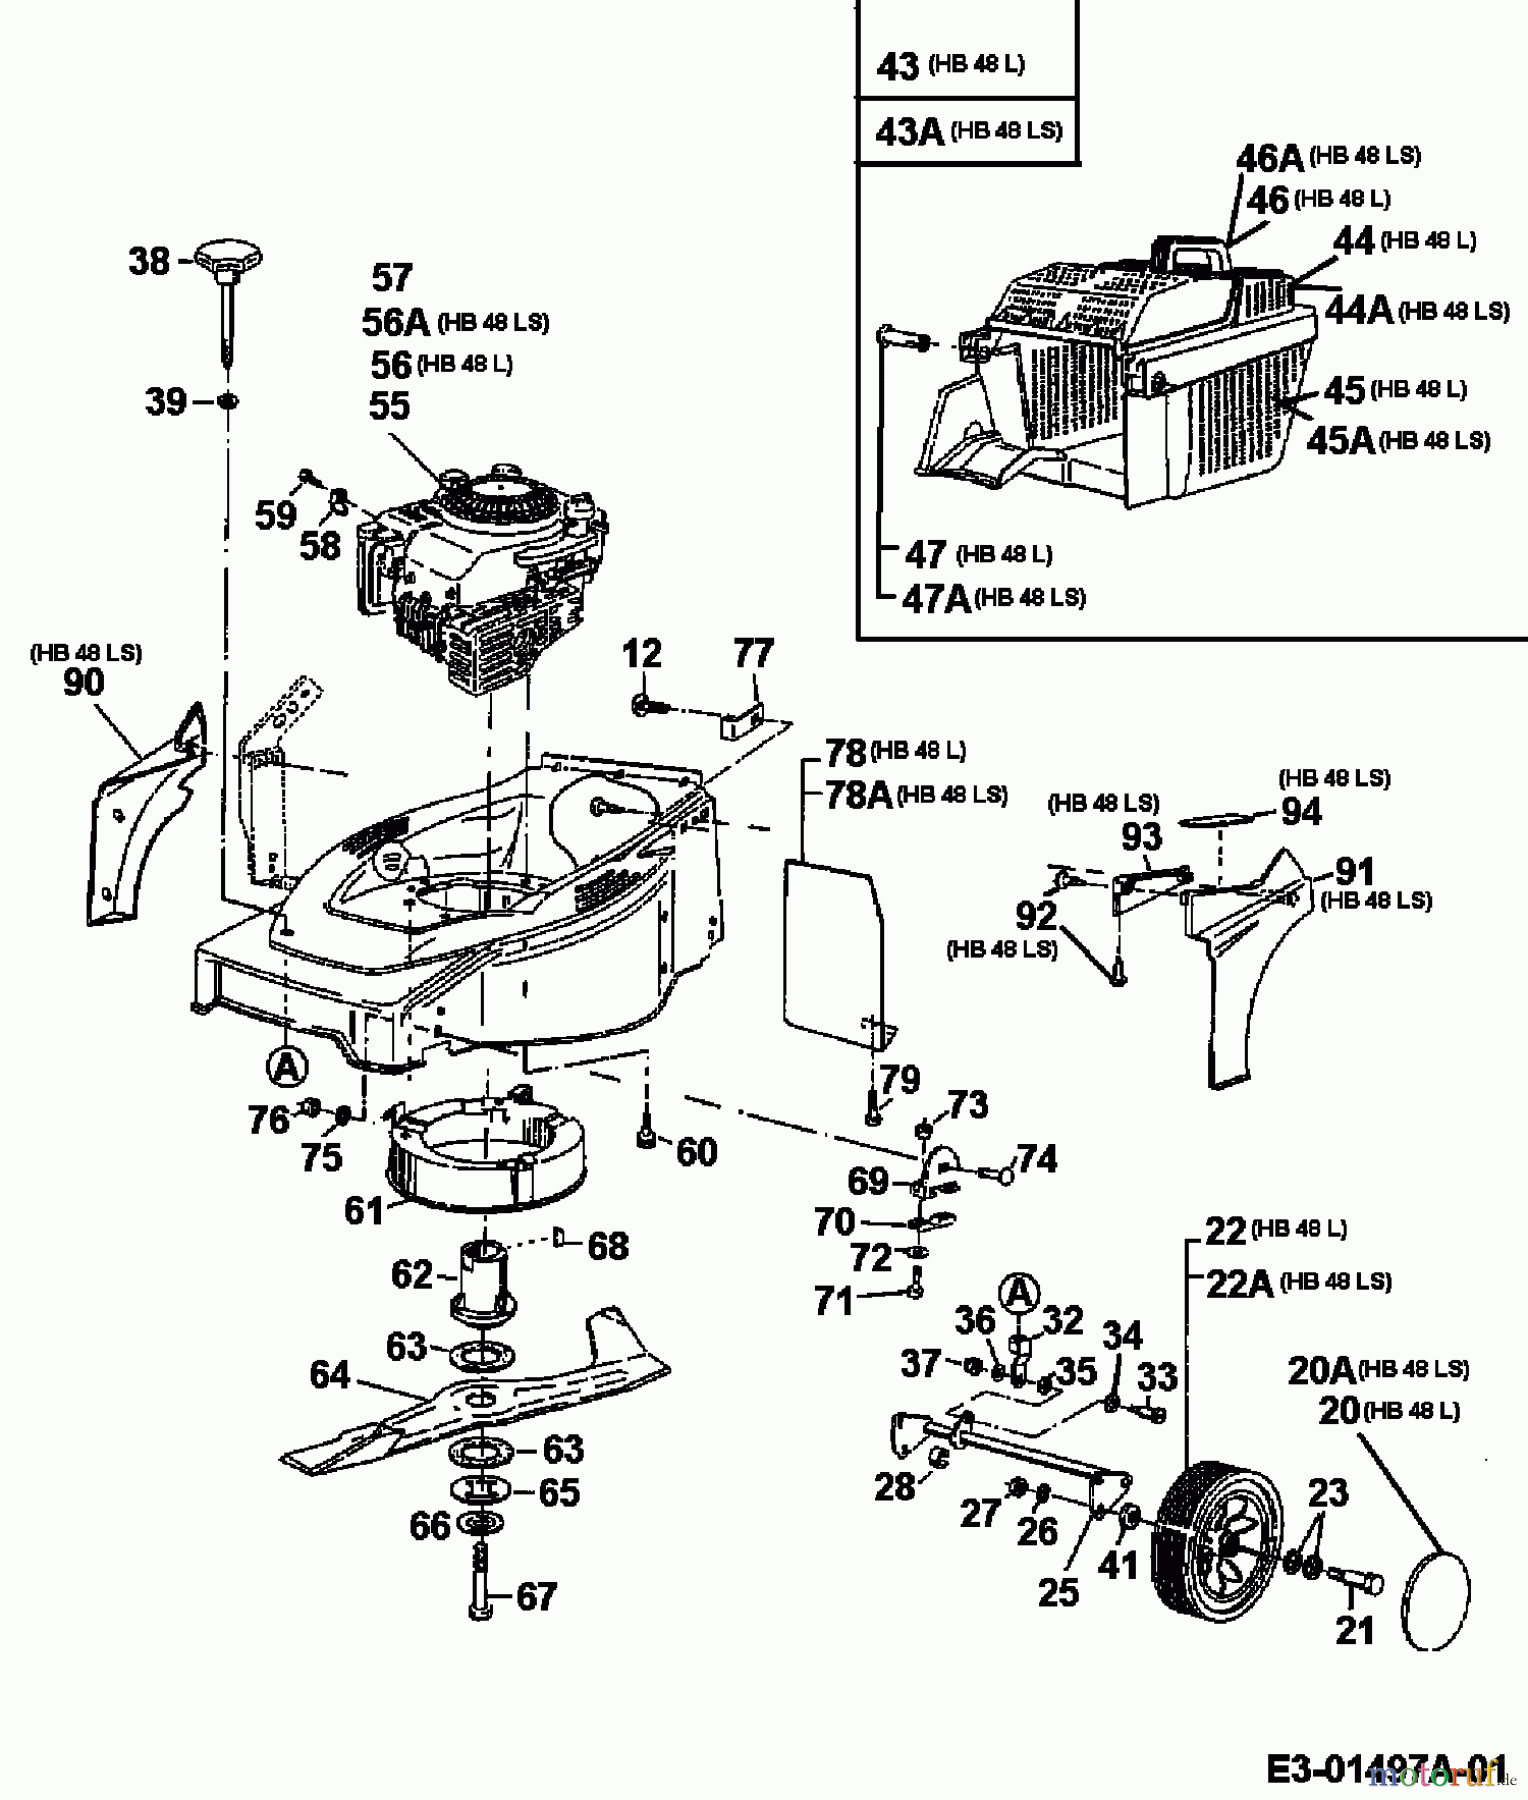  Gutbrod Motormäher HB 48 L 11B-T58V604  (2000) Grundgerät